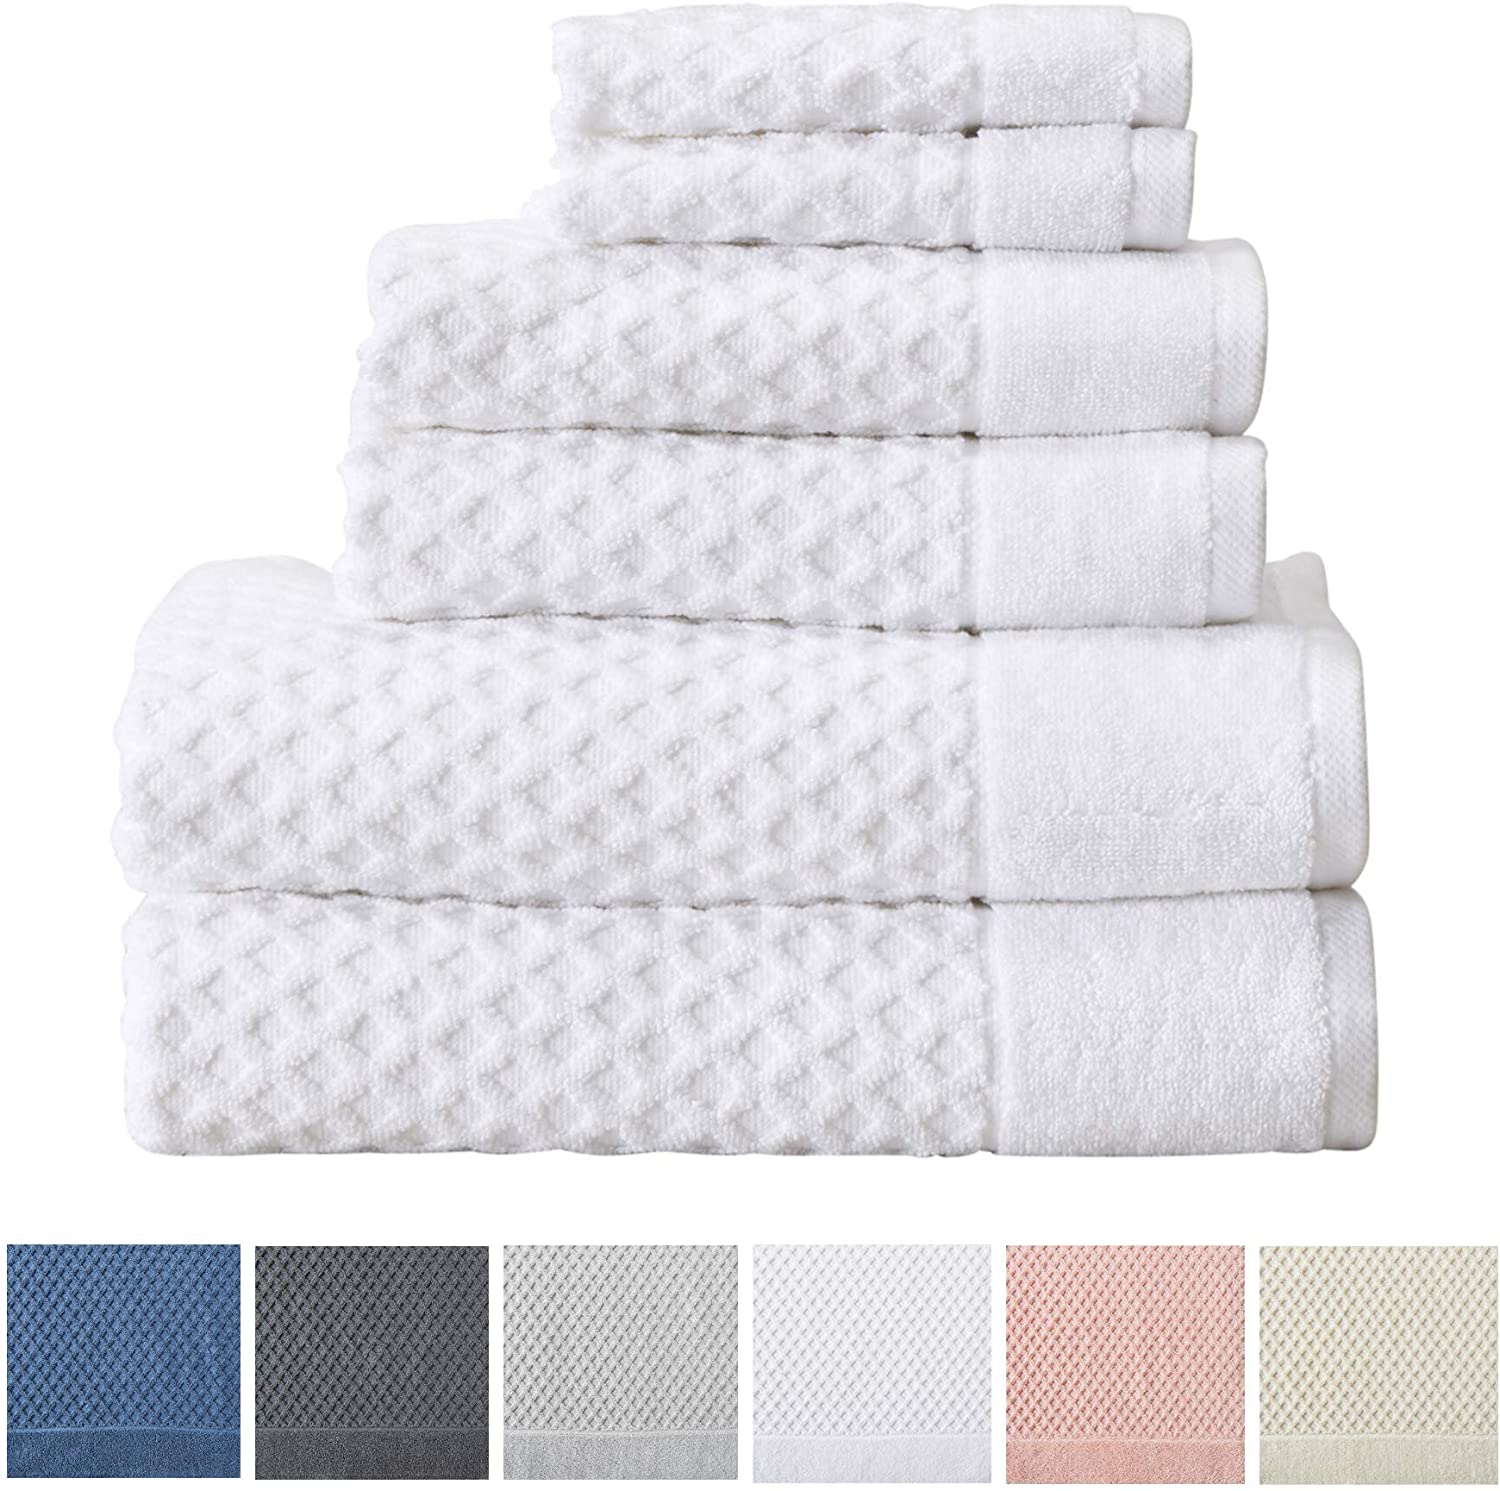 luxury cotton bath towels multiple colors soft diamond pattern